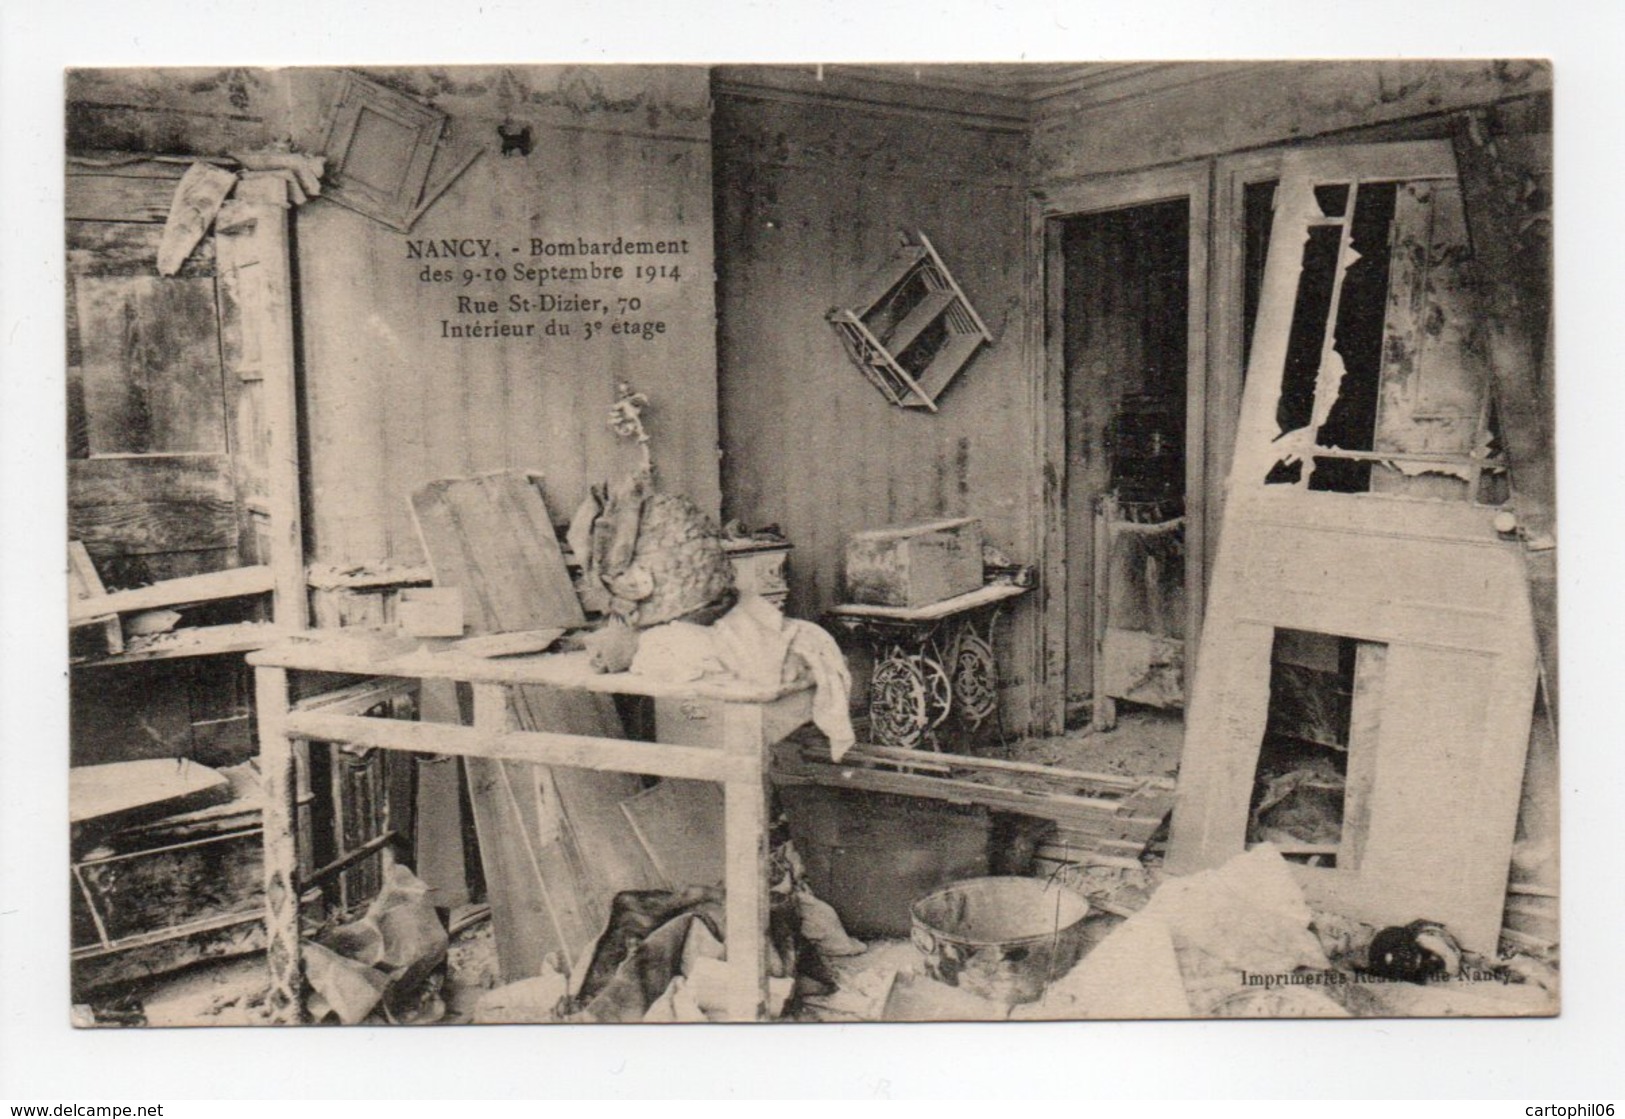 - CPA NANCY (54) - Bombardement Des 9-10 Septembre 1914 - Rue St-Dizier, 70 - Intérieur Du 3e étage - - Nancy